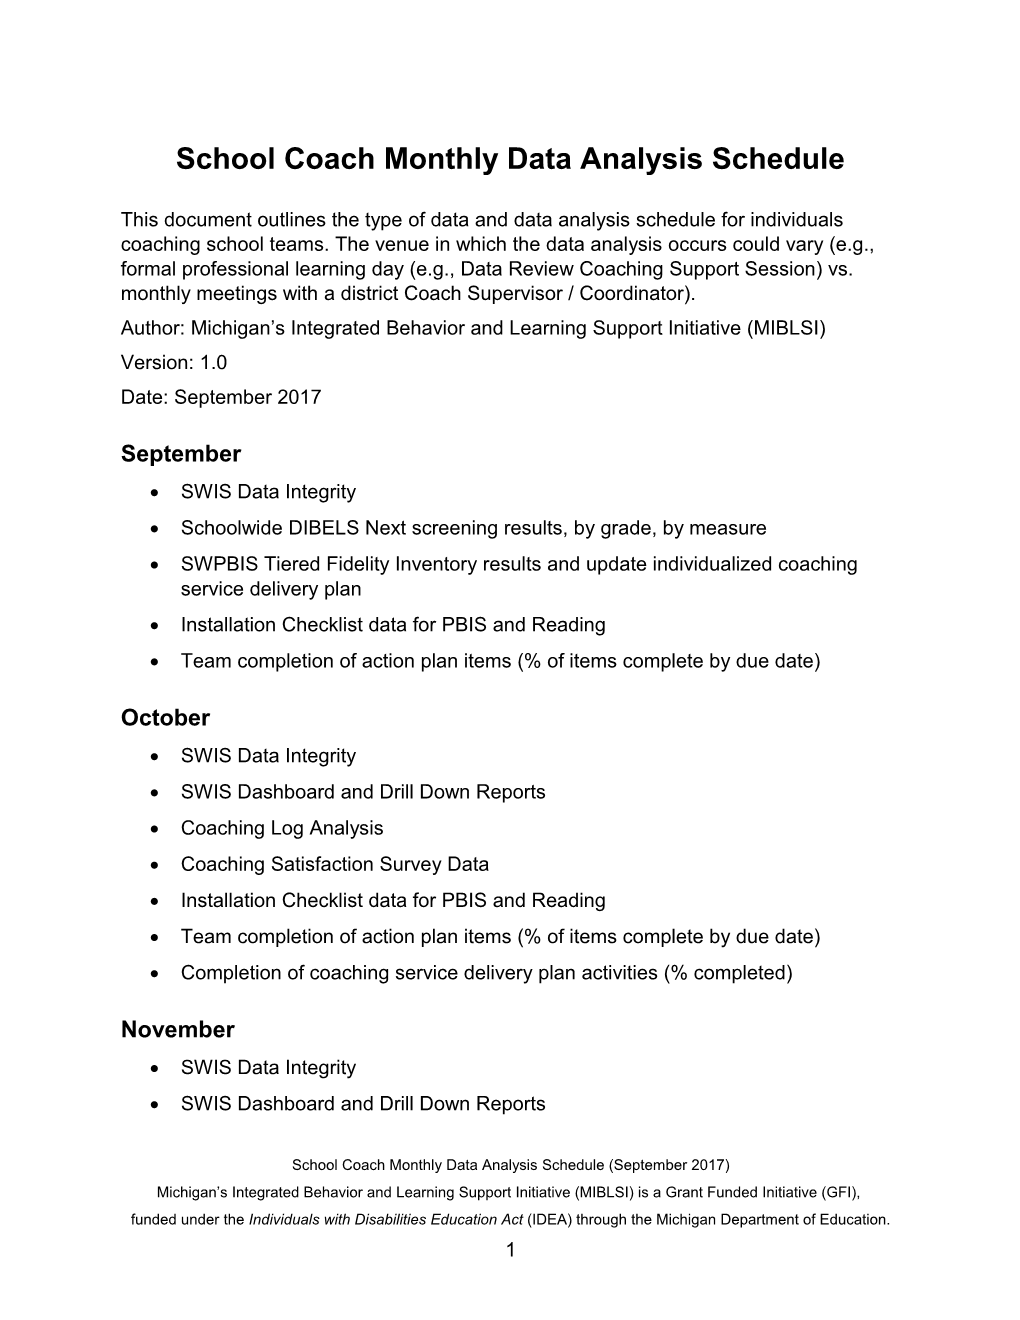 School Coach Monthly Data Analysis Schedule